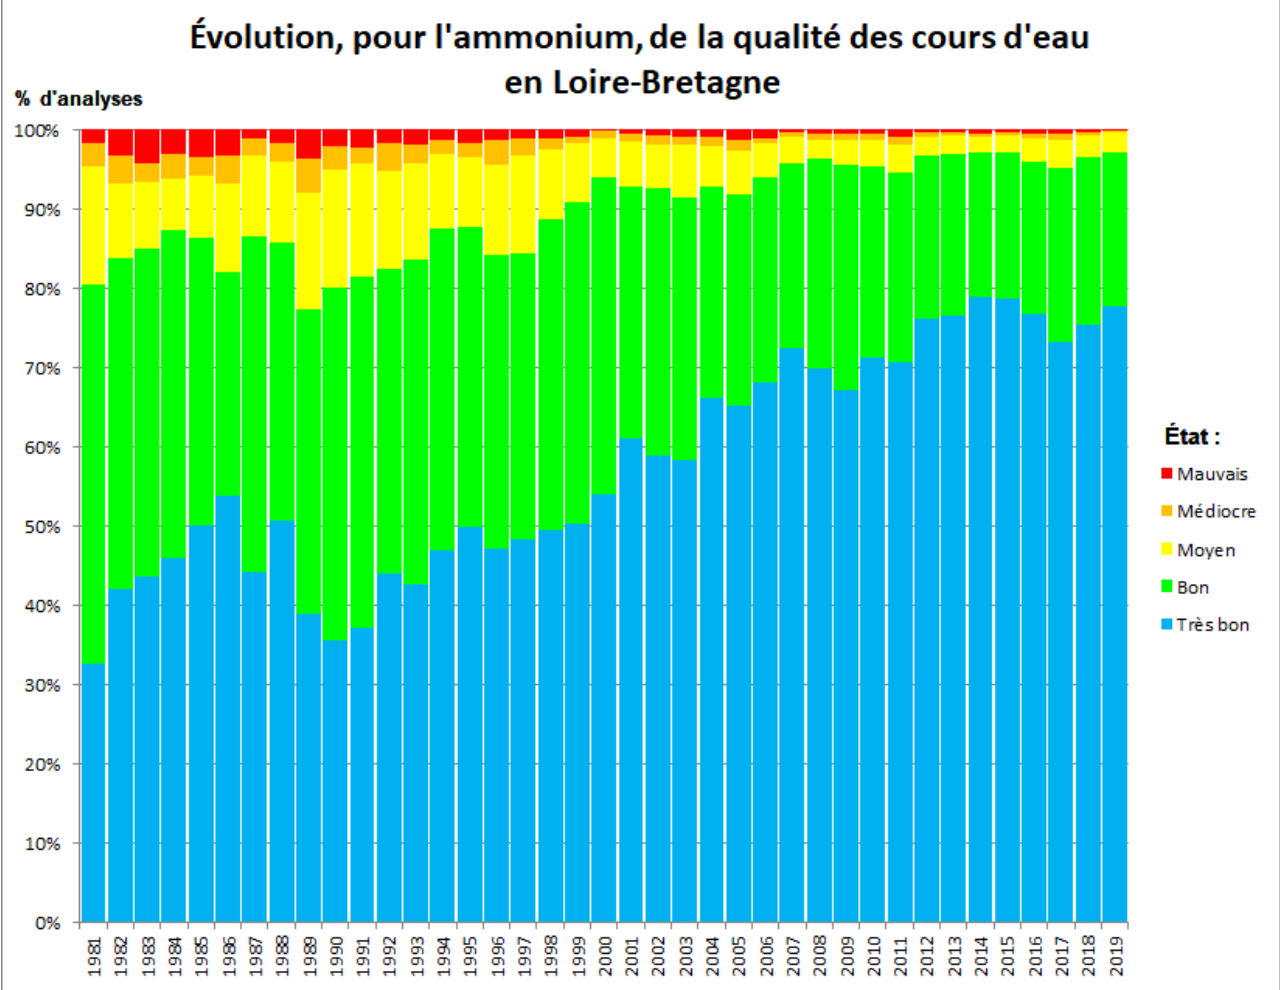 Diagramme en bâtons présentant l'évolution, pour l'ammonium, de la qualité des cours d'eau en Loire-Bretagne. Sont représentés par année, de 1989 à 2019, les pourcentages d'analyses montrant un état des eaux (très bon, bon, moyen, médiocre et mauvais).